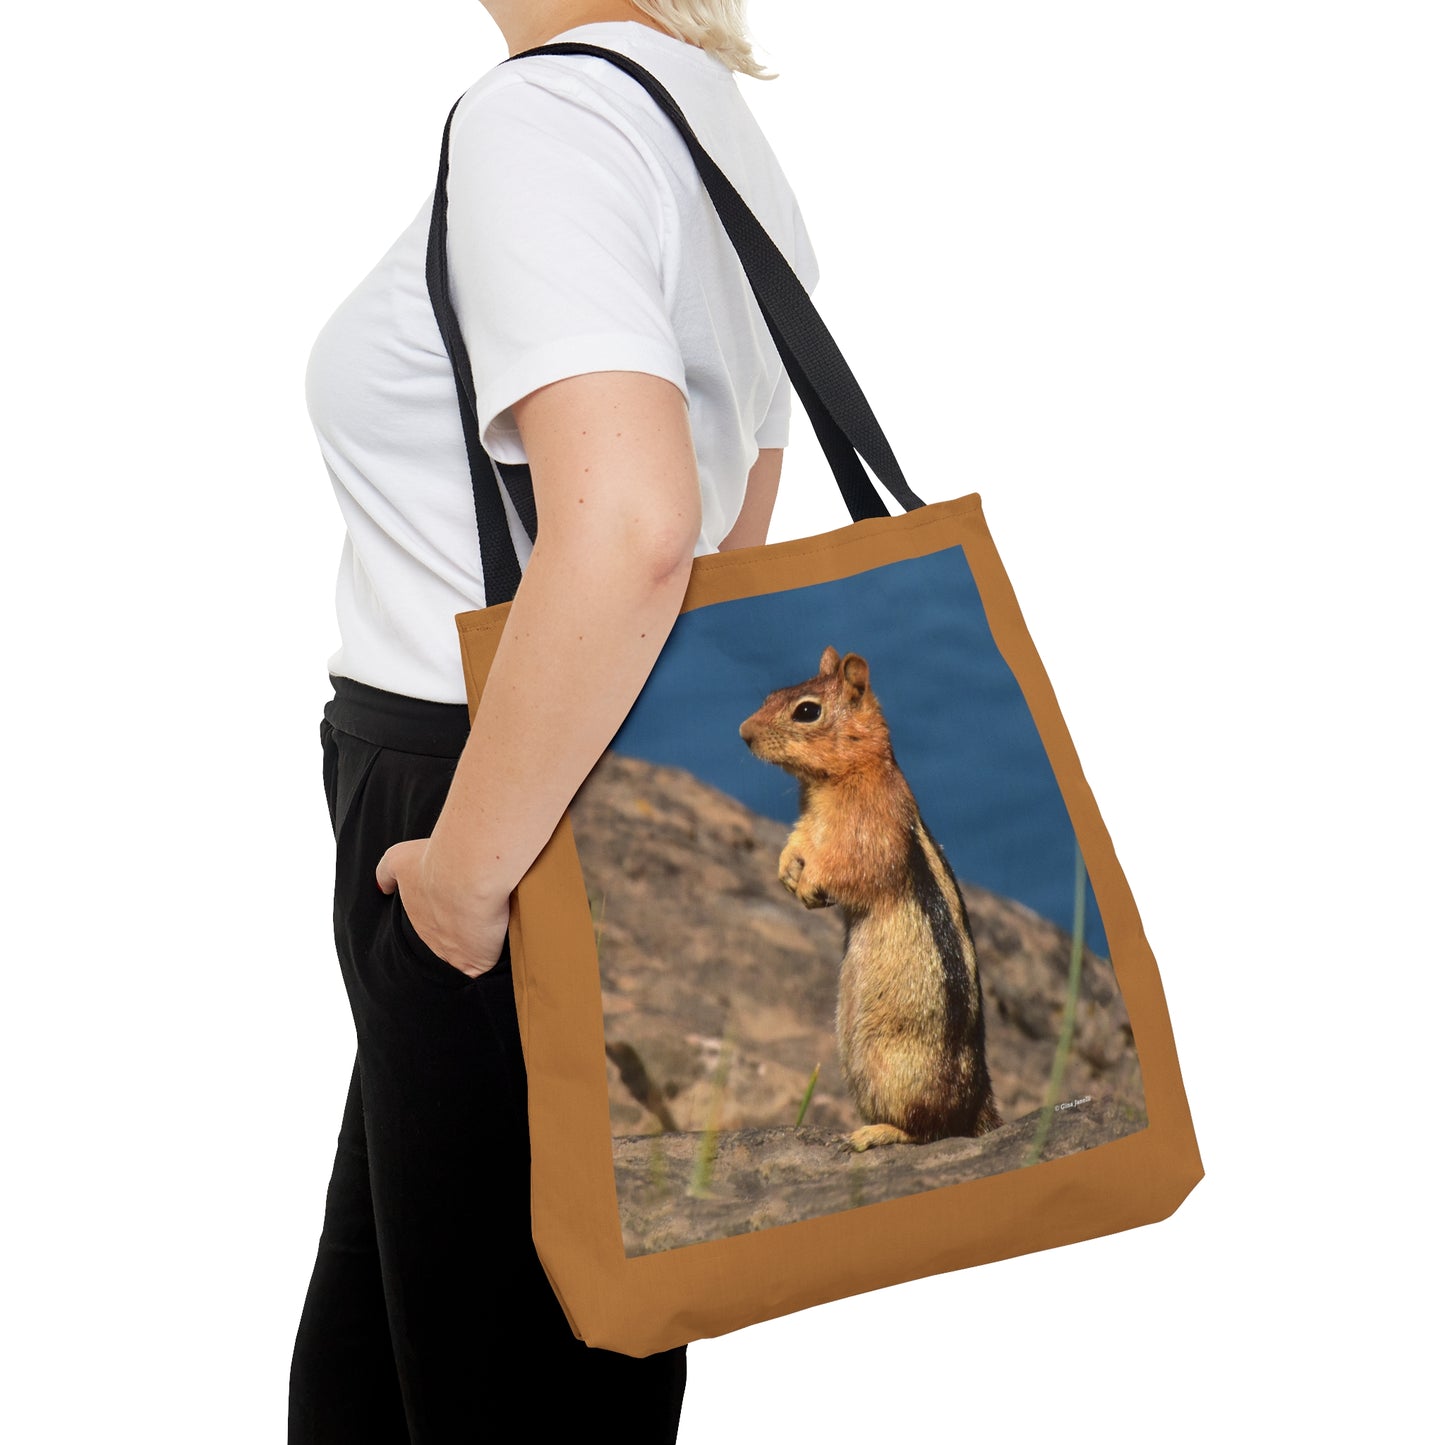 Golden-mantled Ground Squirrel   Tote Bag (AOP)